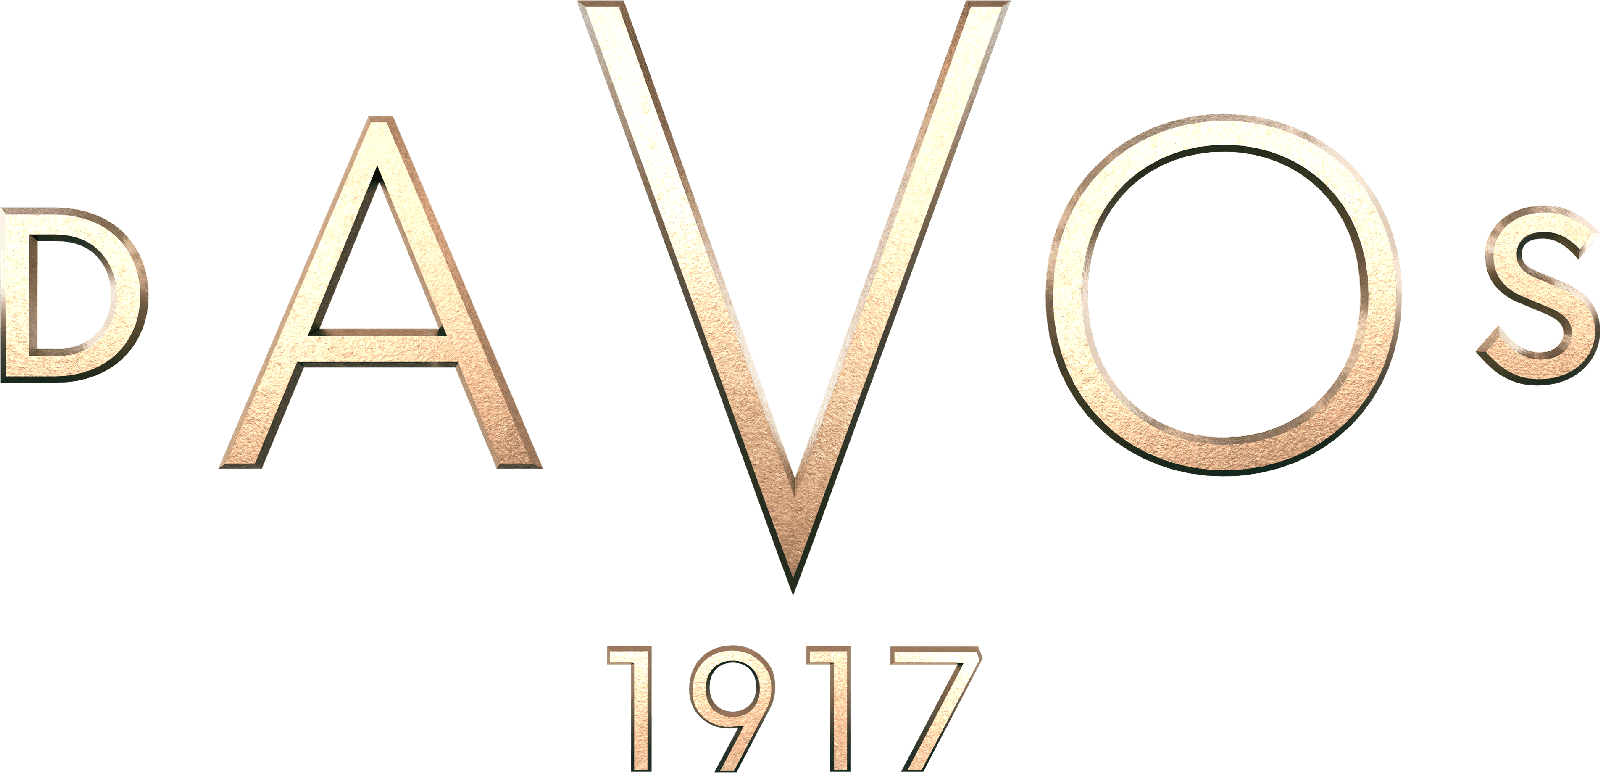 Davos 1917 logo